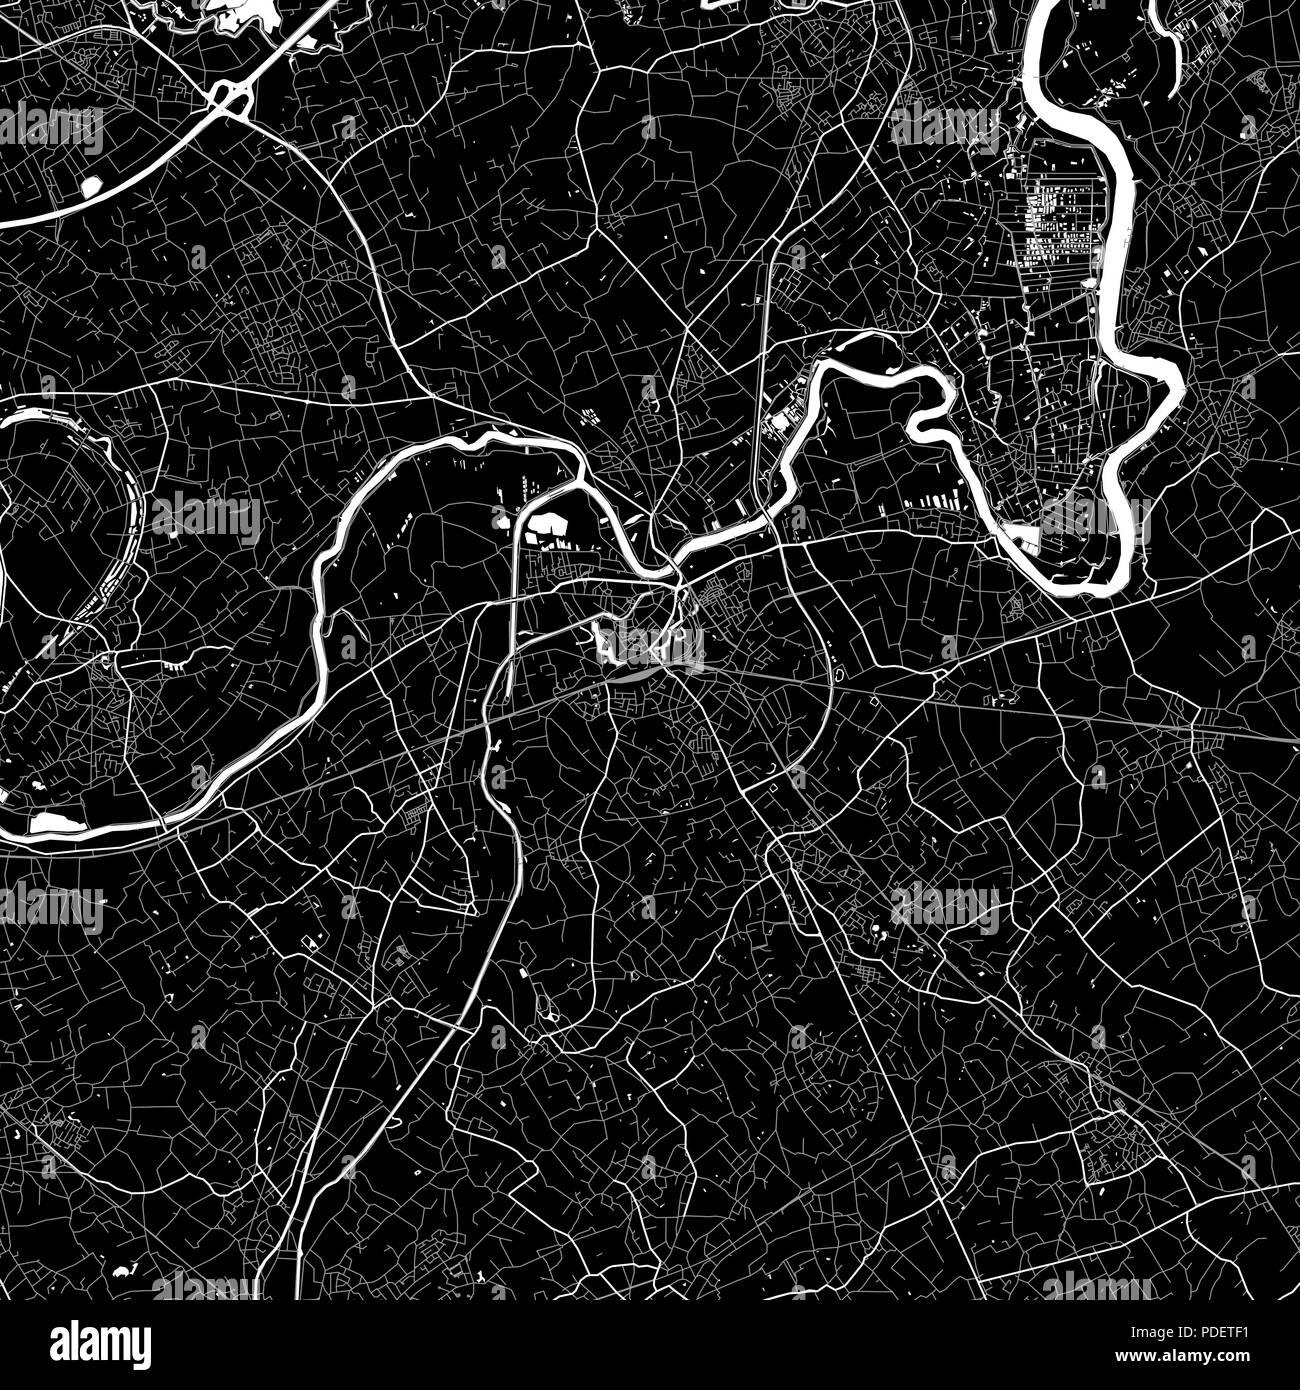 Lageplan von Dendermonde, Belgien. Der dunkle Hintergrund Version für Infografik und Marketing. Diese Karte von Dendermonde, Flämische Region, enthält Straßen, Stock Vektor